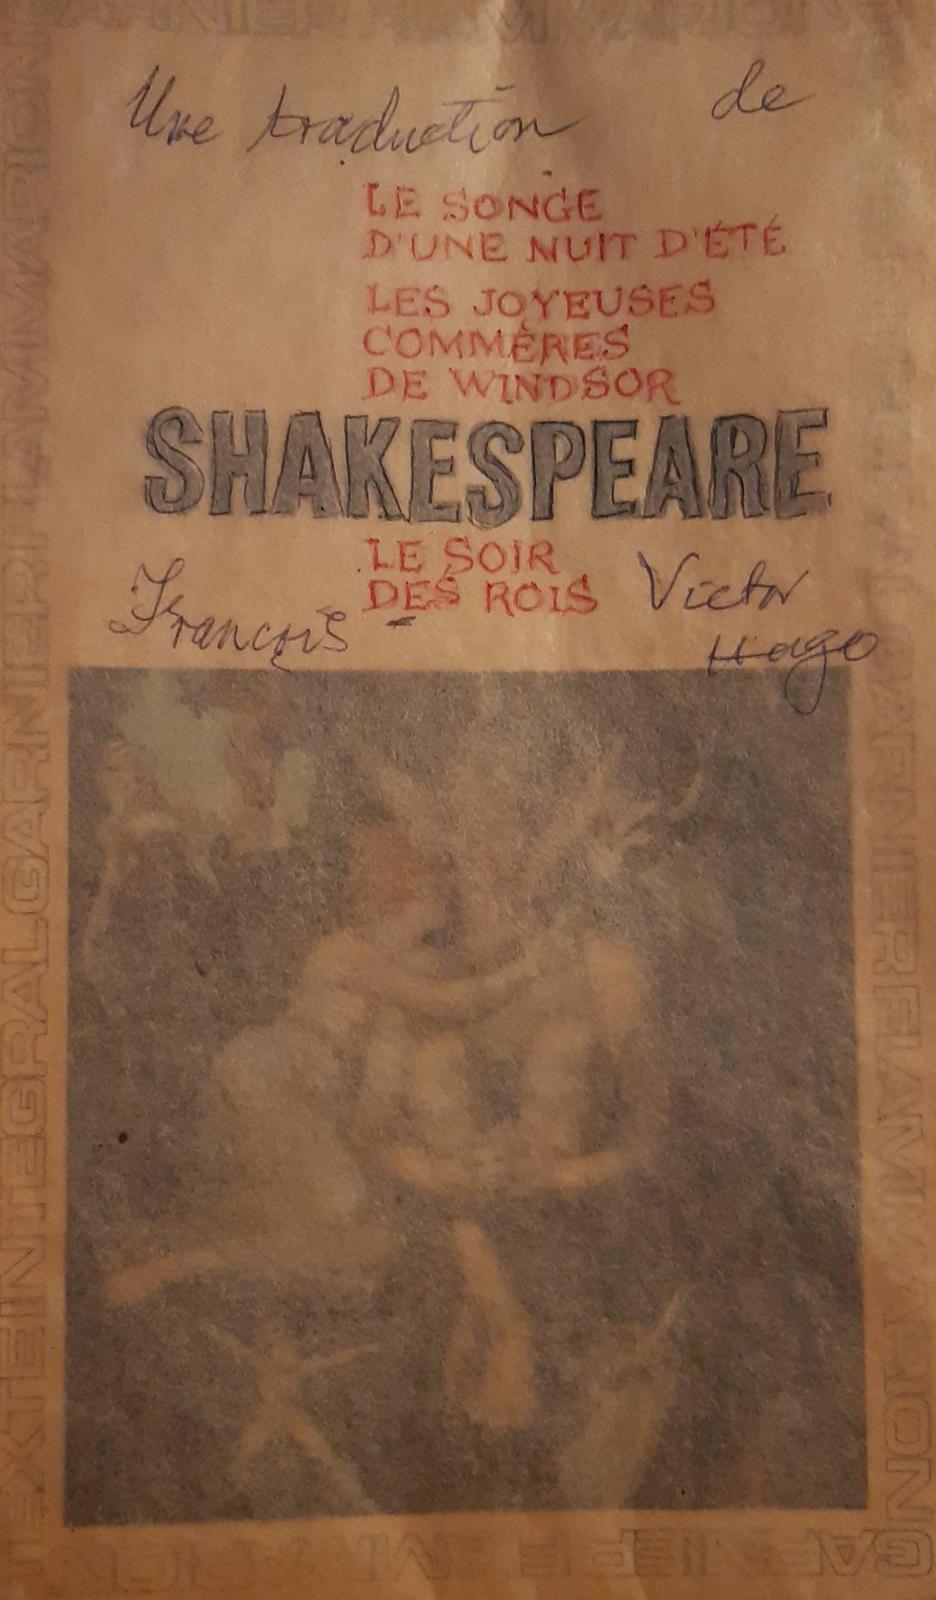 William Shakespeare: Le songe d'une nuit d'été - Les joyeuses commères de Windsor - Le soir de rois (French language, 1966, Garnier-Flammarion)